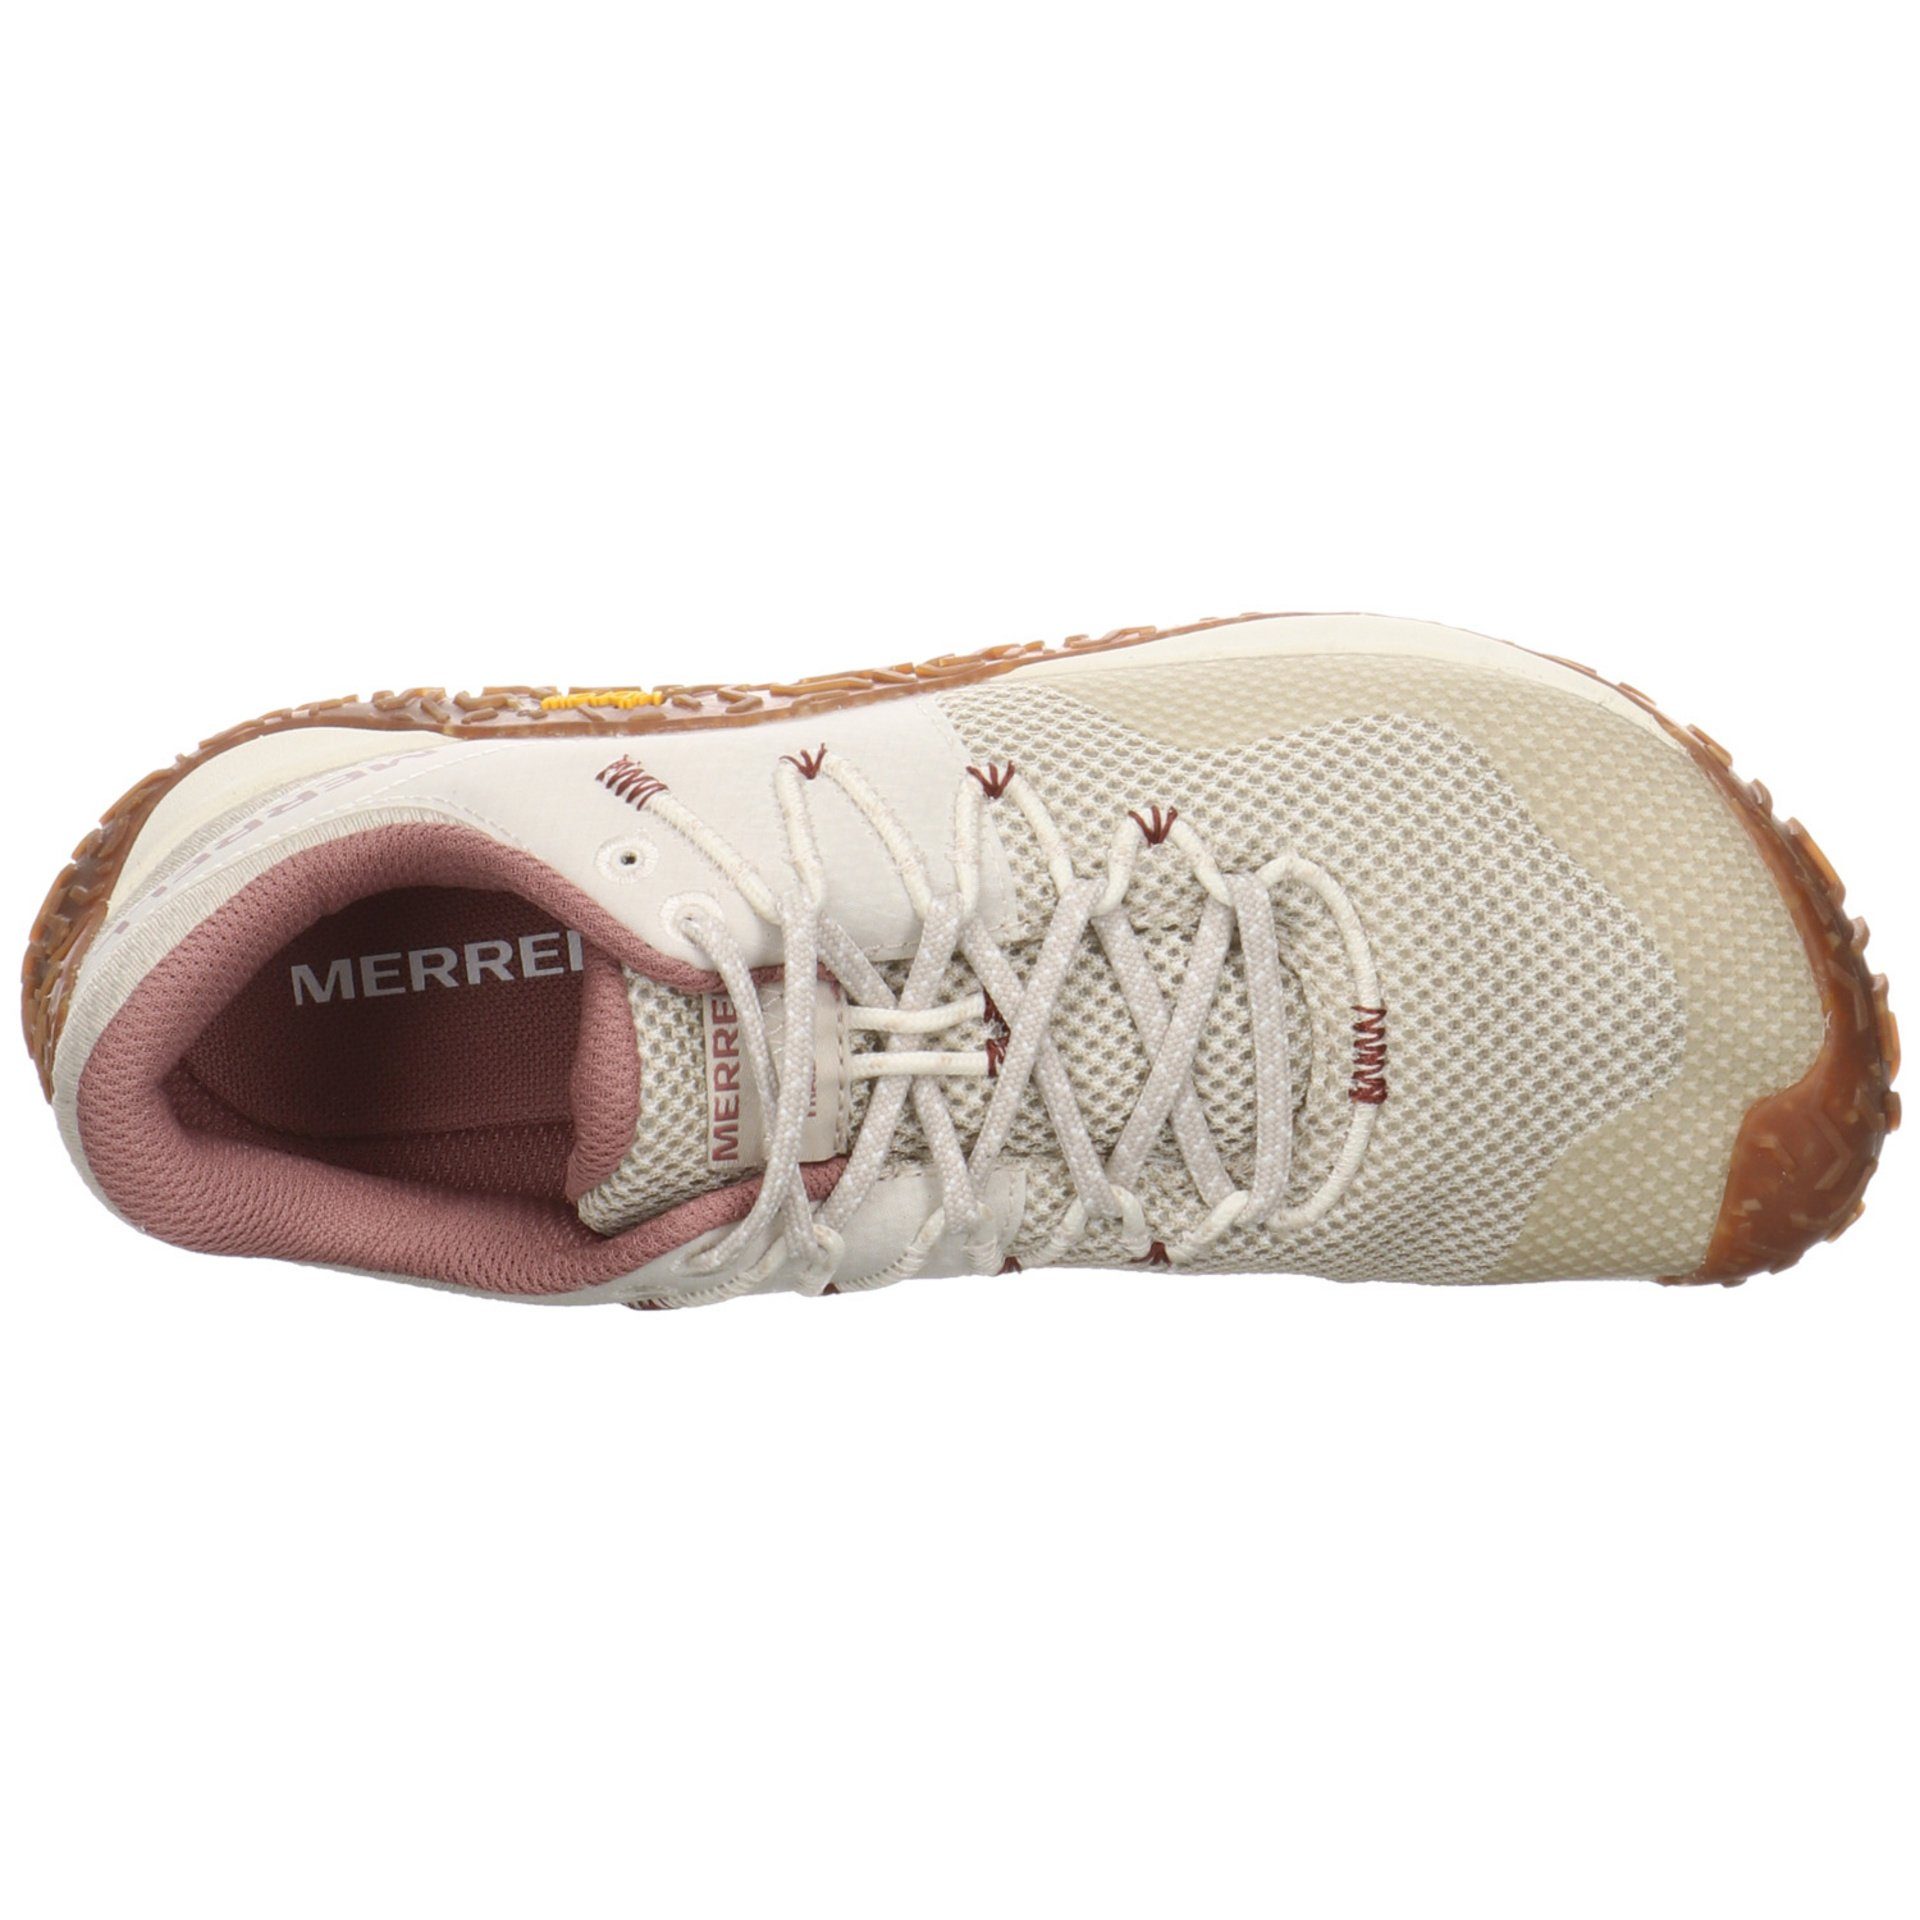 Damen Merrell Schuhe Barfußschuh Outdoor oyster/gum Barfußschuh Glove 7 Synthetikkombination Trail